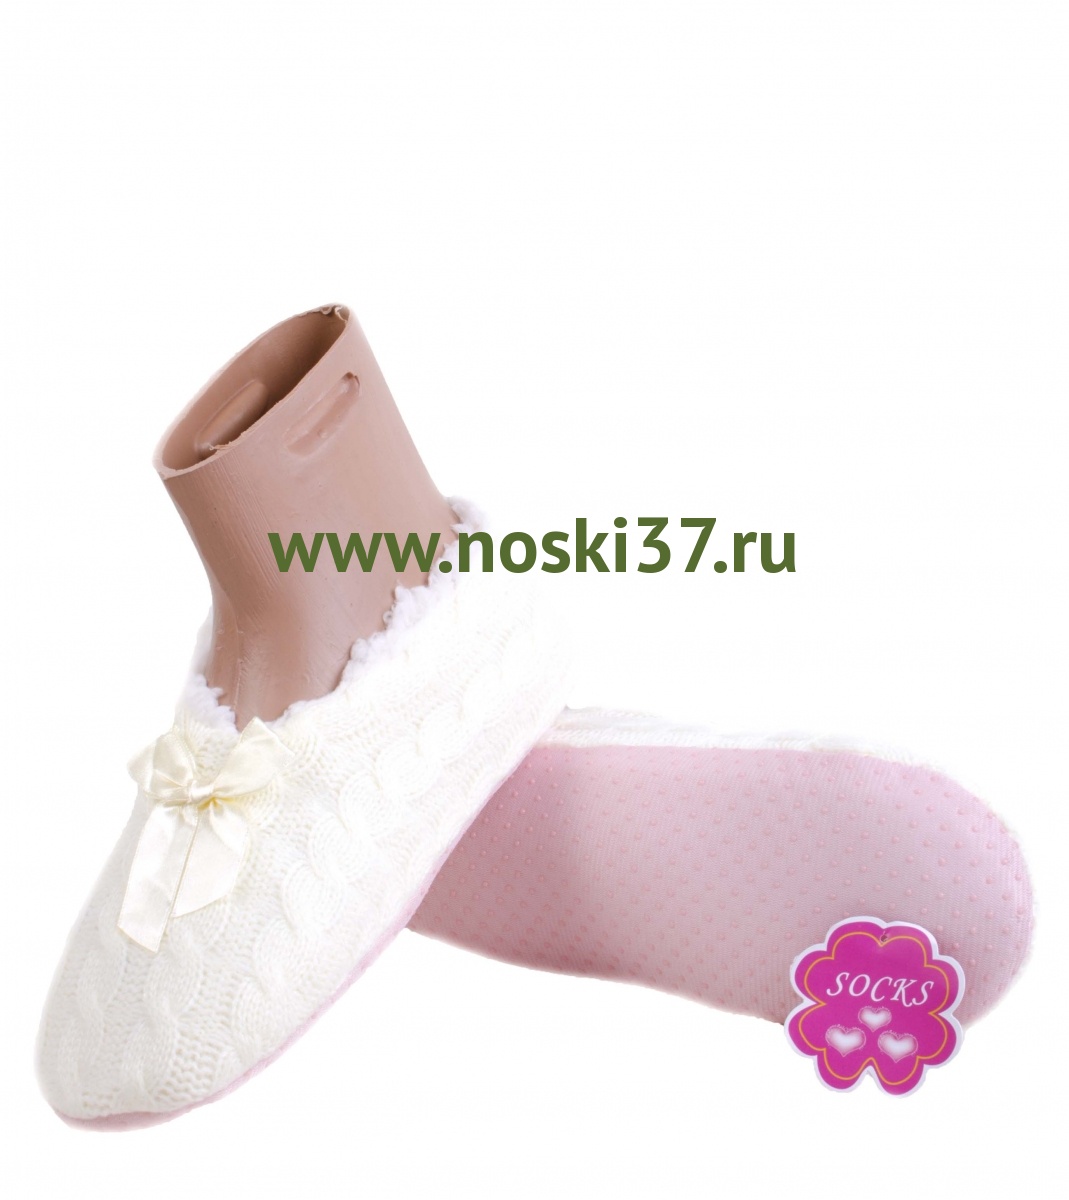 Носки-тапки женские "Socks" № 16-34 купить оптом и мелким оптом, низкие цены от магазина Комфорт(noski37) для всей семьи с доставка по всей России от производителя.